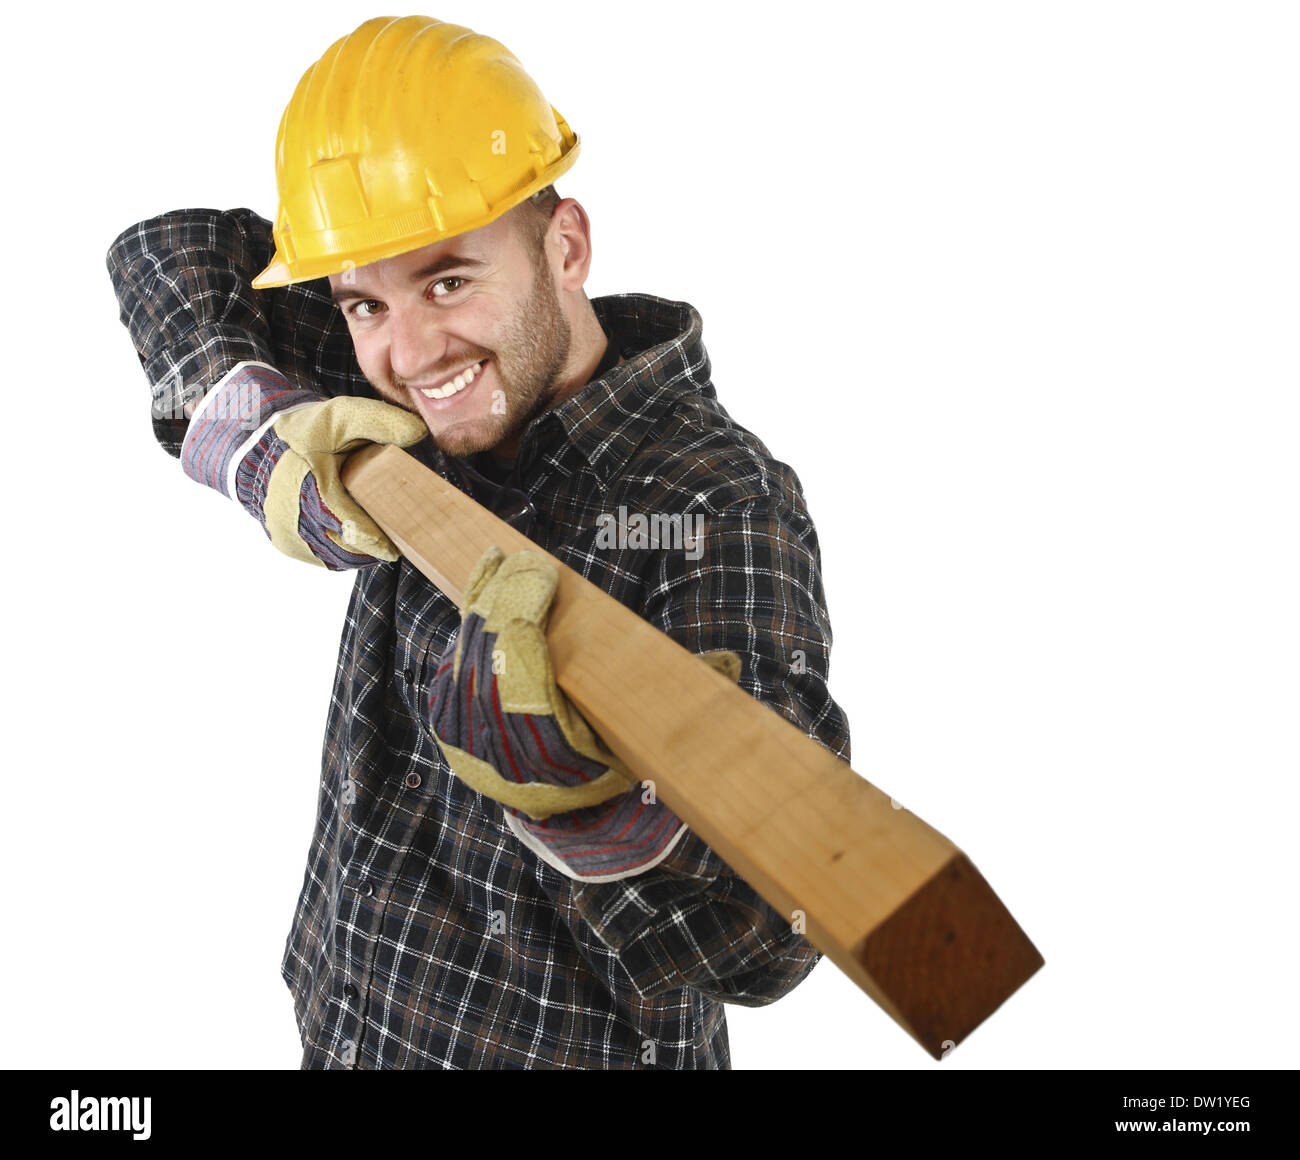 young carpenter has fun at work Stock Photo